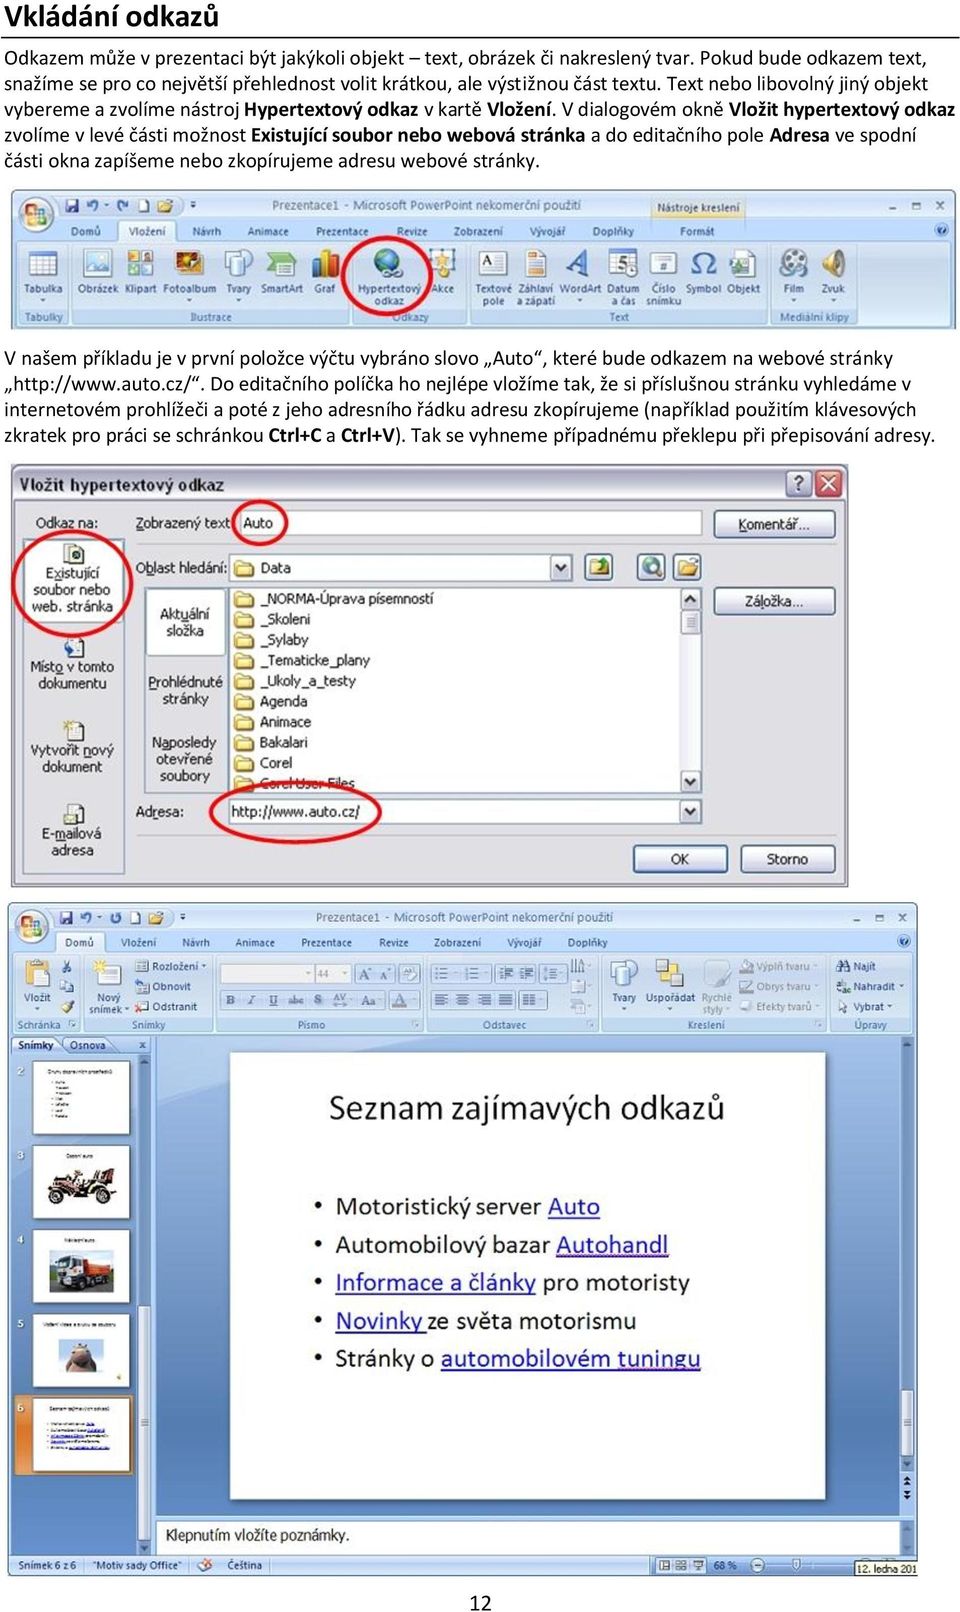 V dialogovém okně Vložit hypertextový odkaz zvolíme v levé části možnost Existující soubor nebo webová stránka a do editačního pole Adresa ve spodní části okna zapíšeme nebo zkopírujeme adresu webové